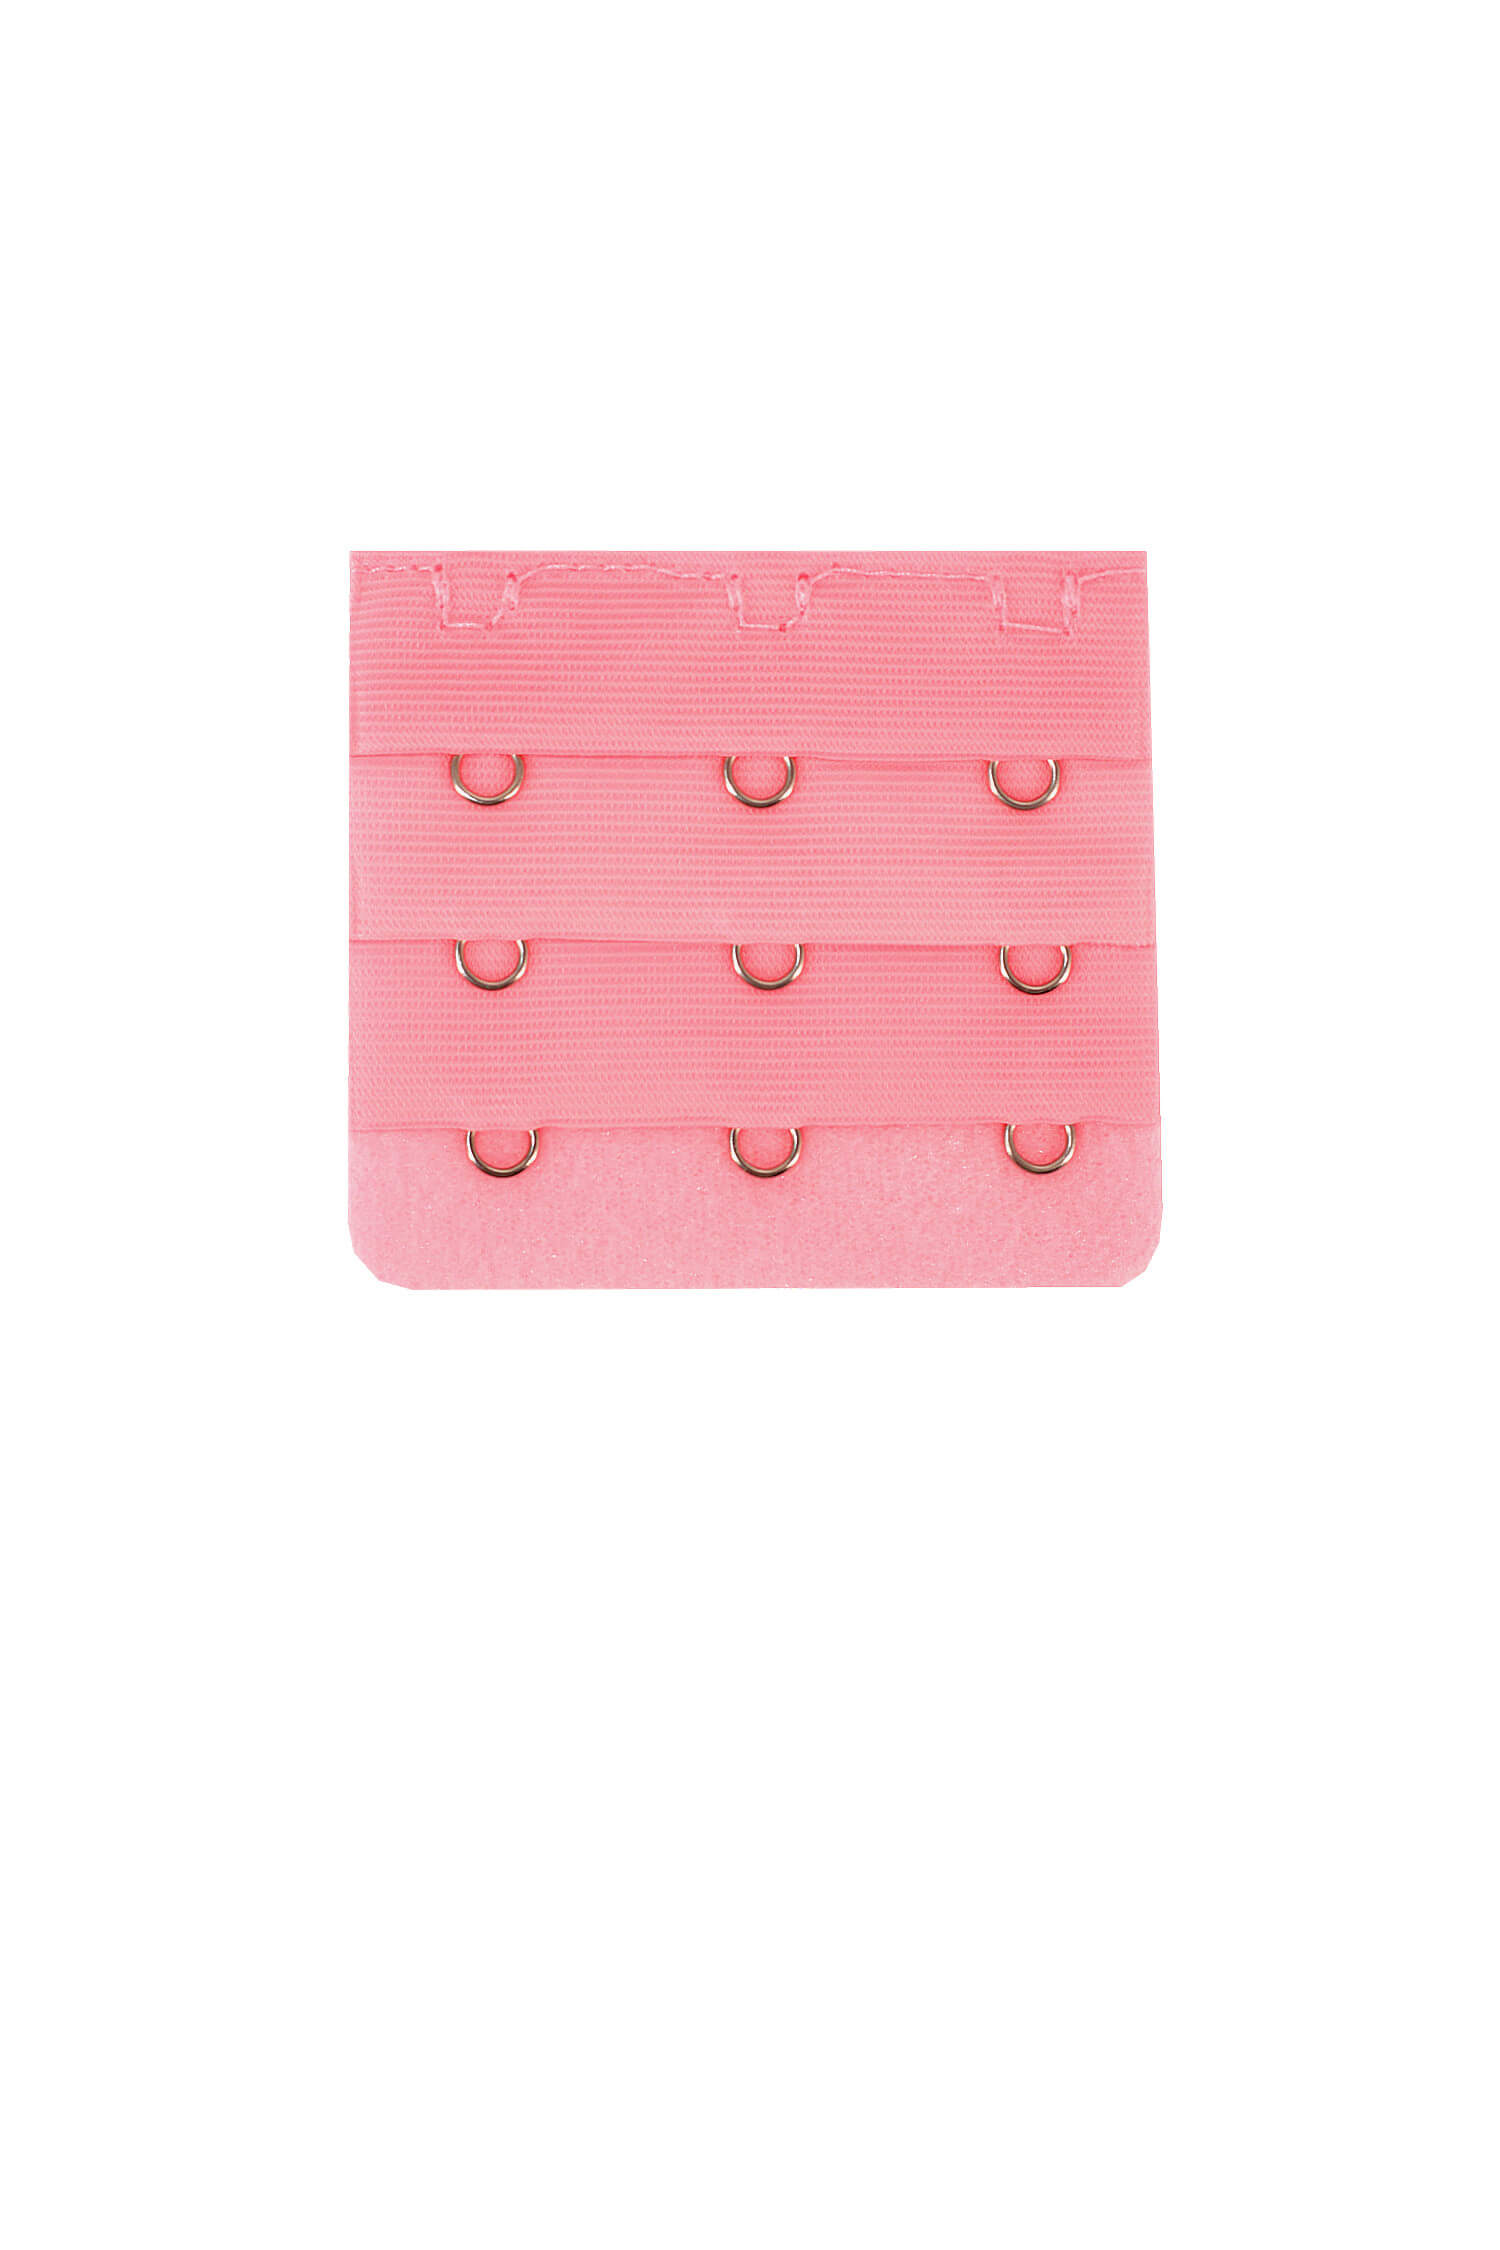 Prodloužení podprsenky pink - 3 háčky růžová